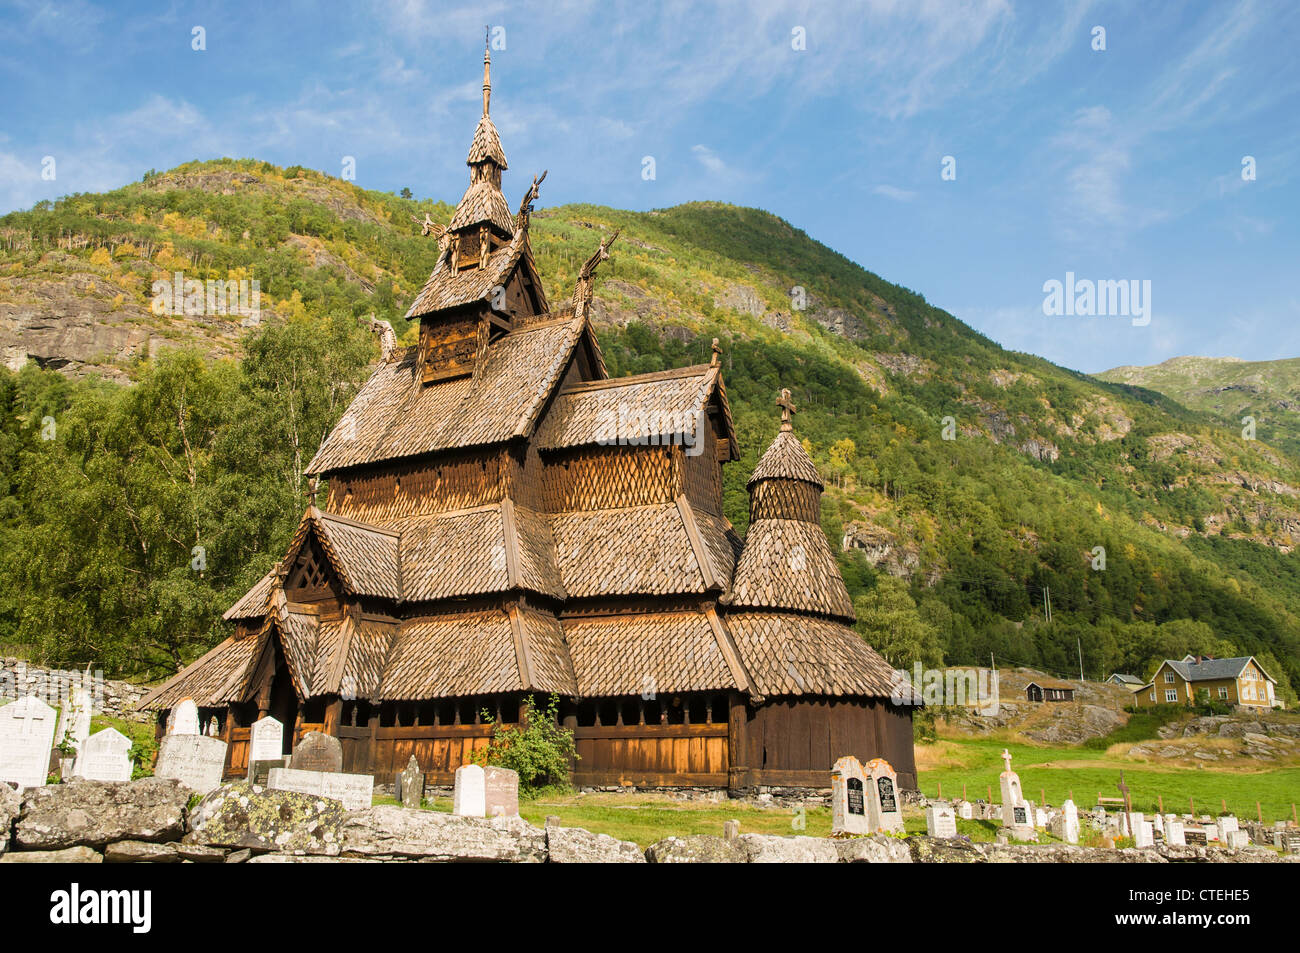 L'église (église en bois), la Norvège Borgund Banque D'Images